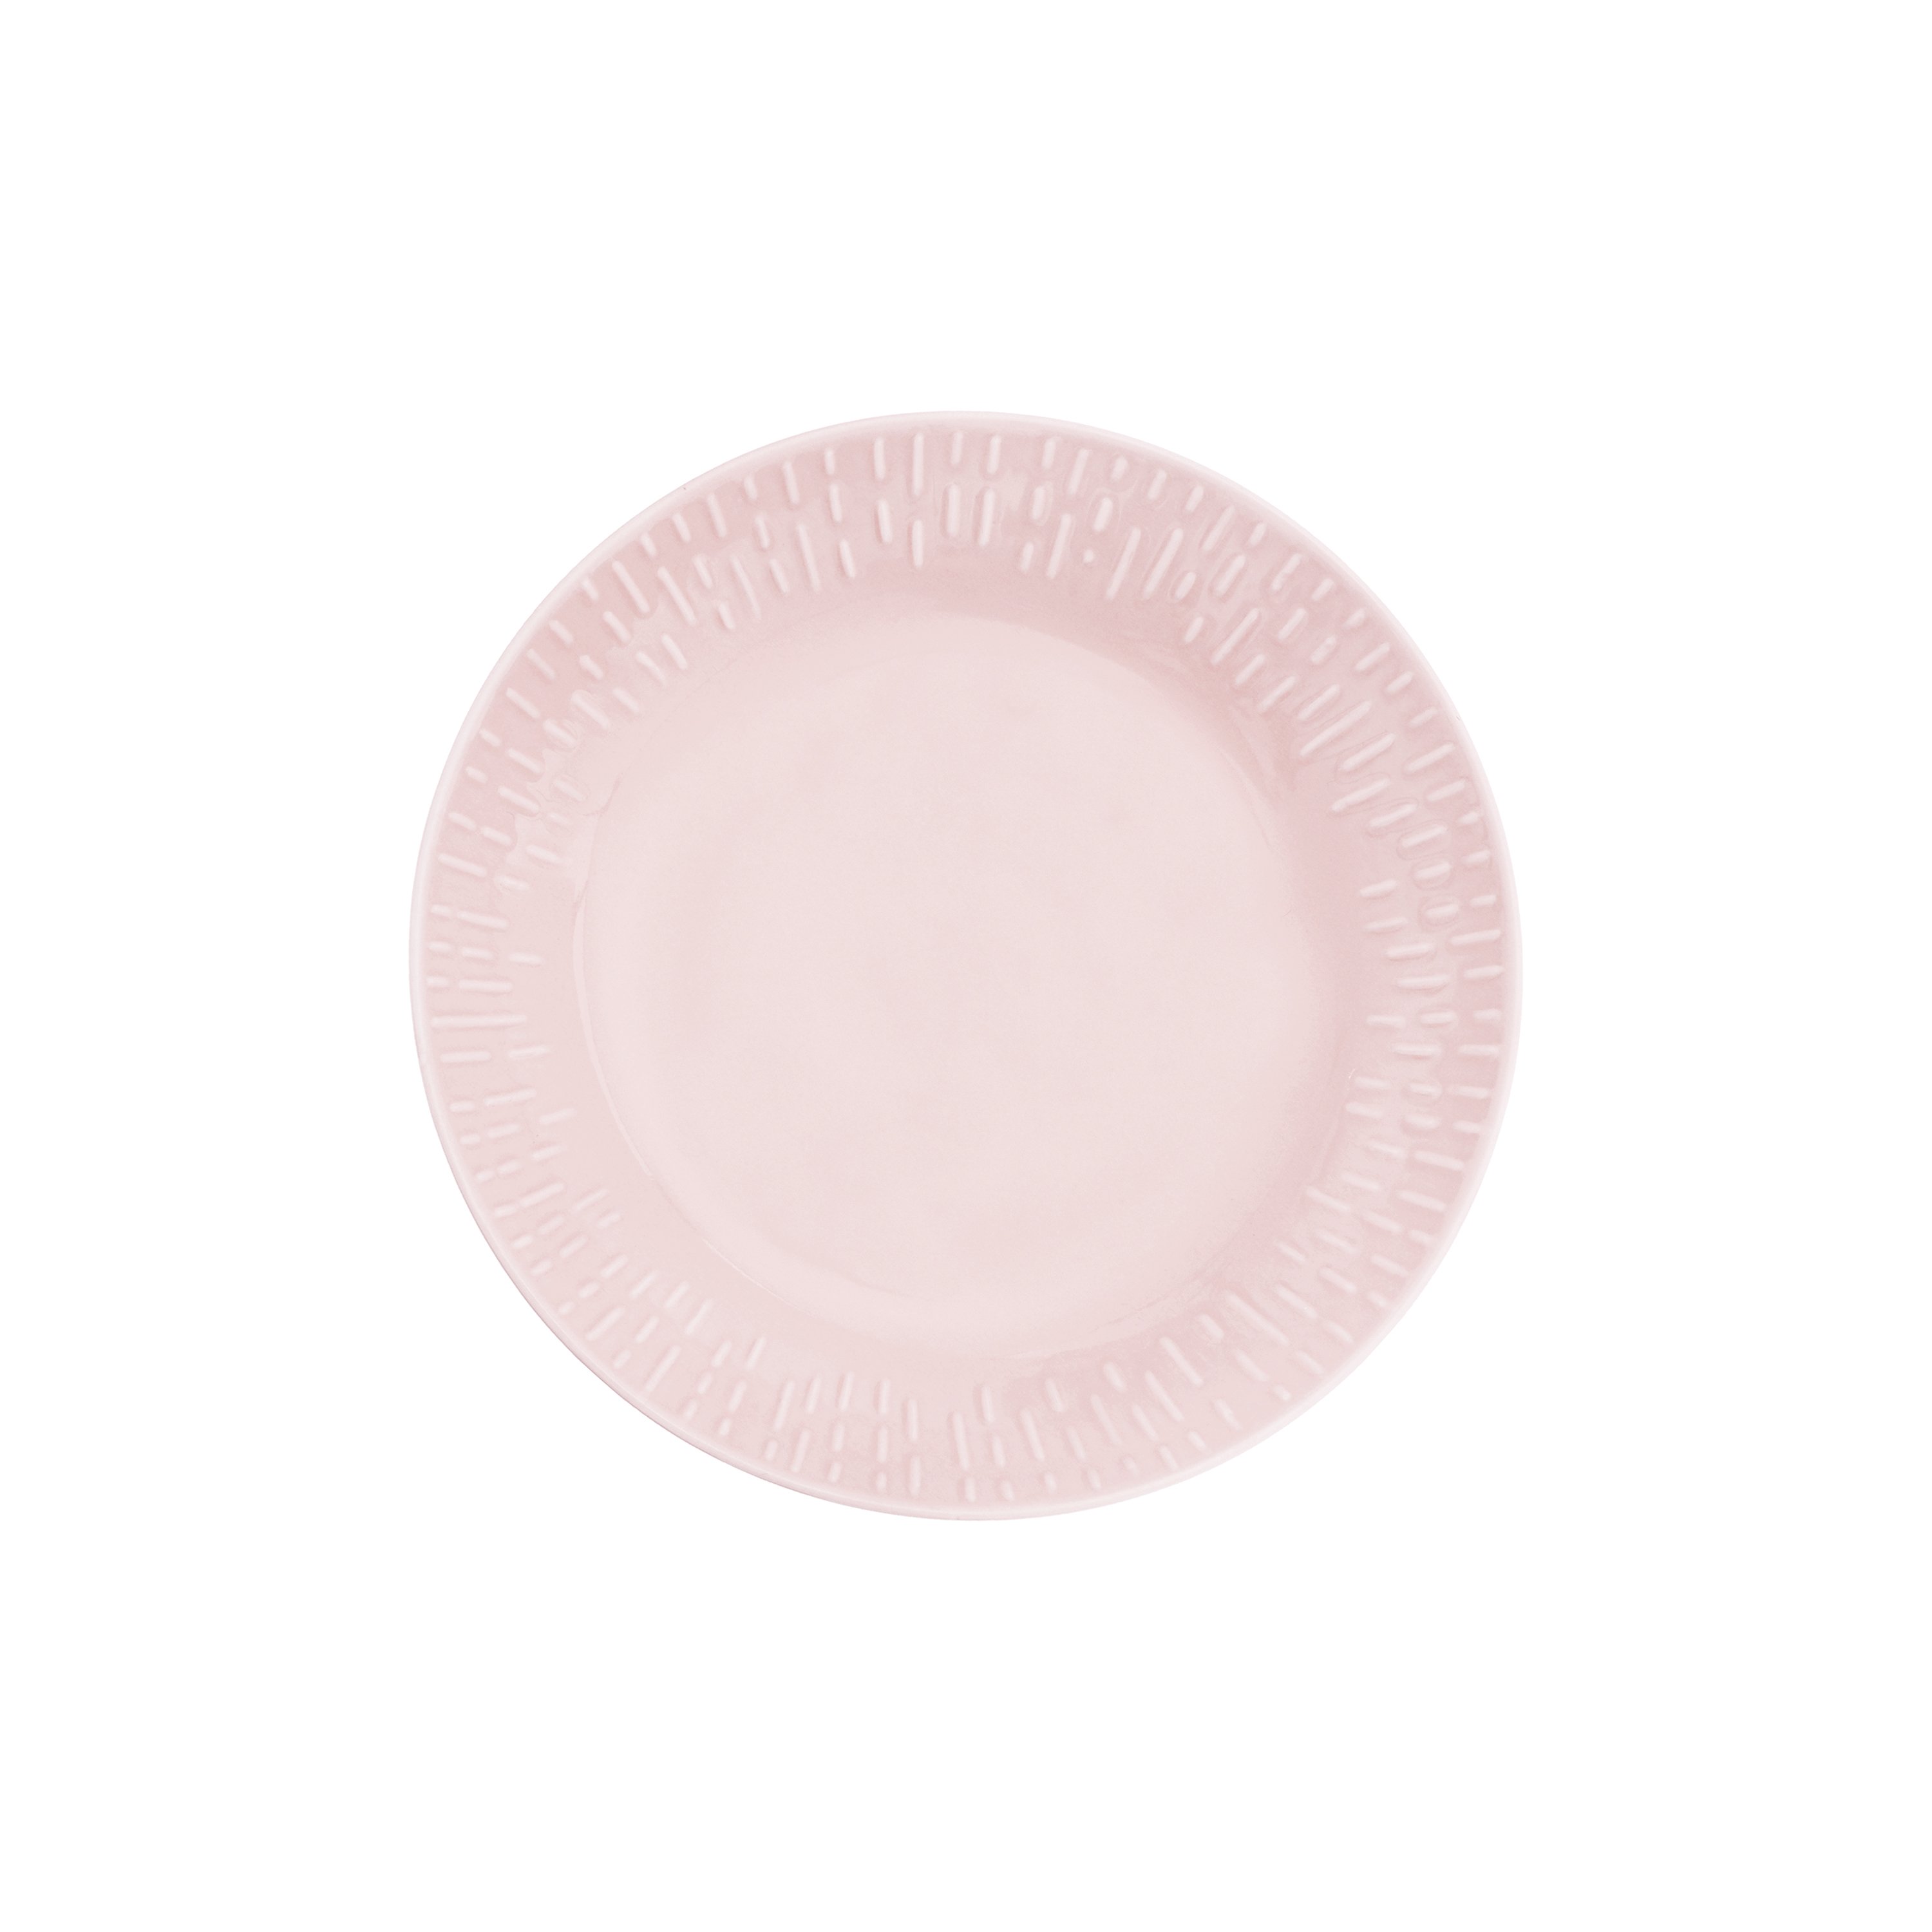 Aida - Life in Colour - Confetti - Candy floss pasta plate w/relief porcelain (13344) - Hjemme og kjøkken